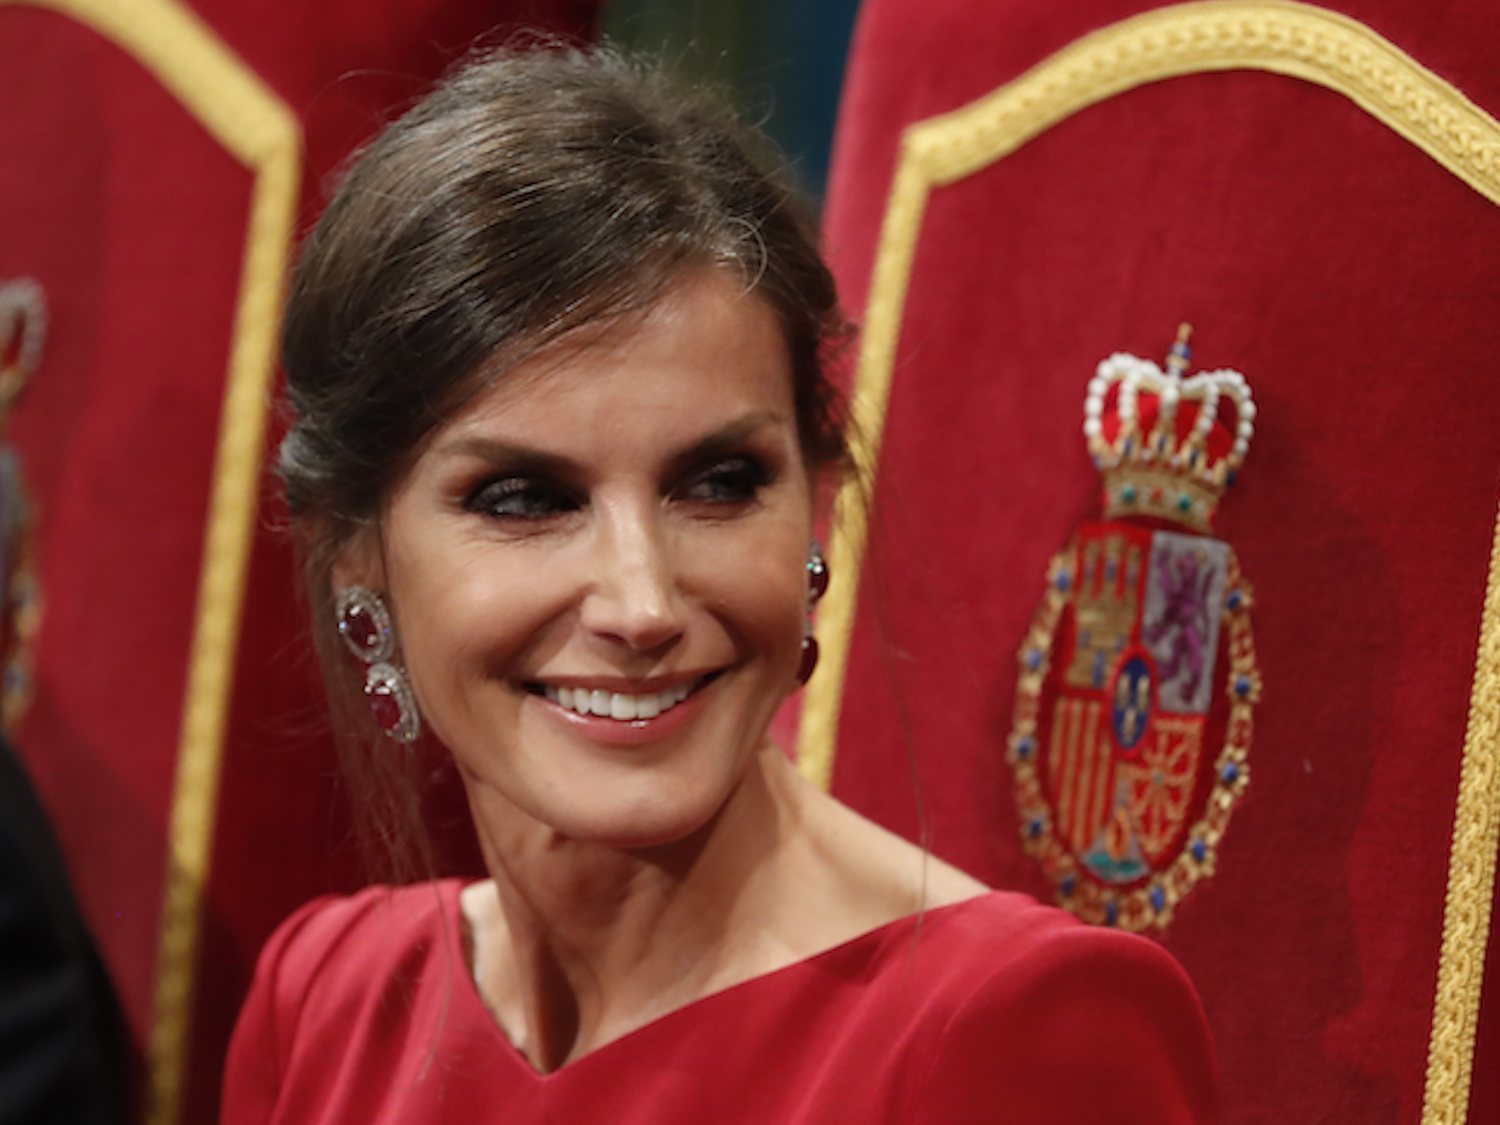 La mirada asesina de la reina Letizia que inquieta a las redes: ¿Maléfica o el Joker?